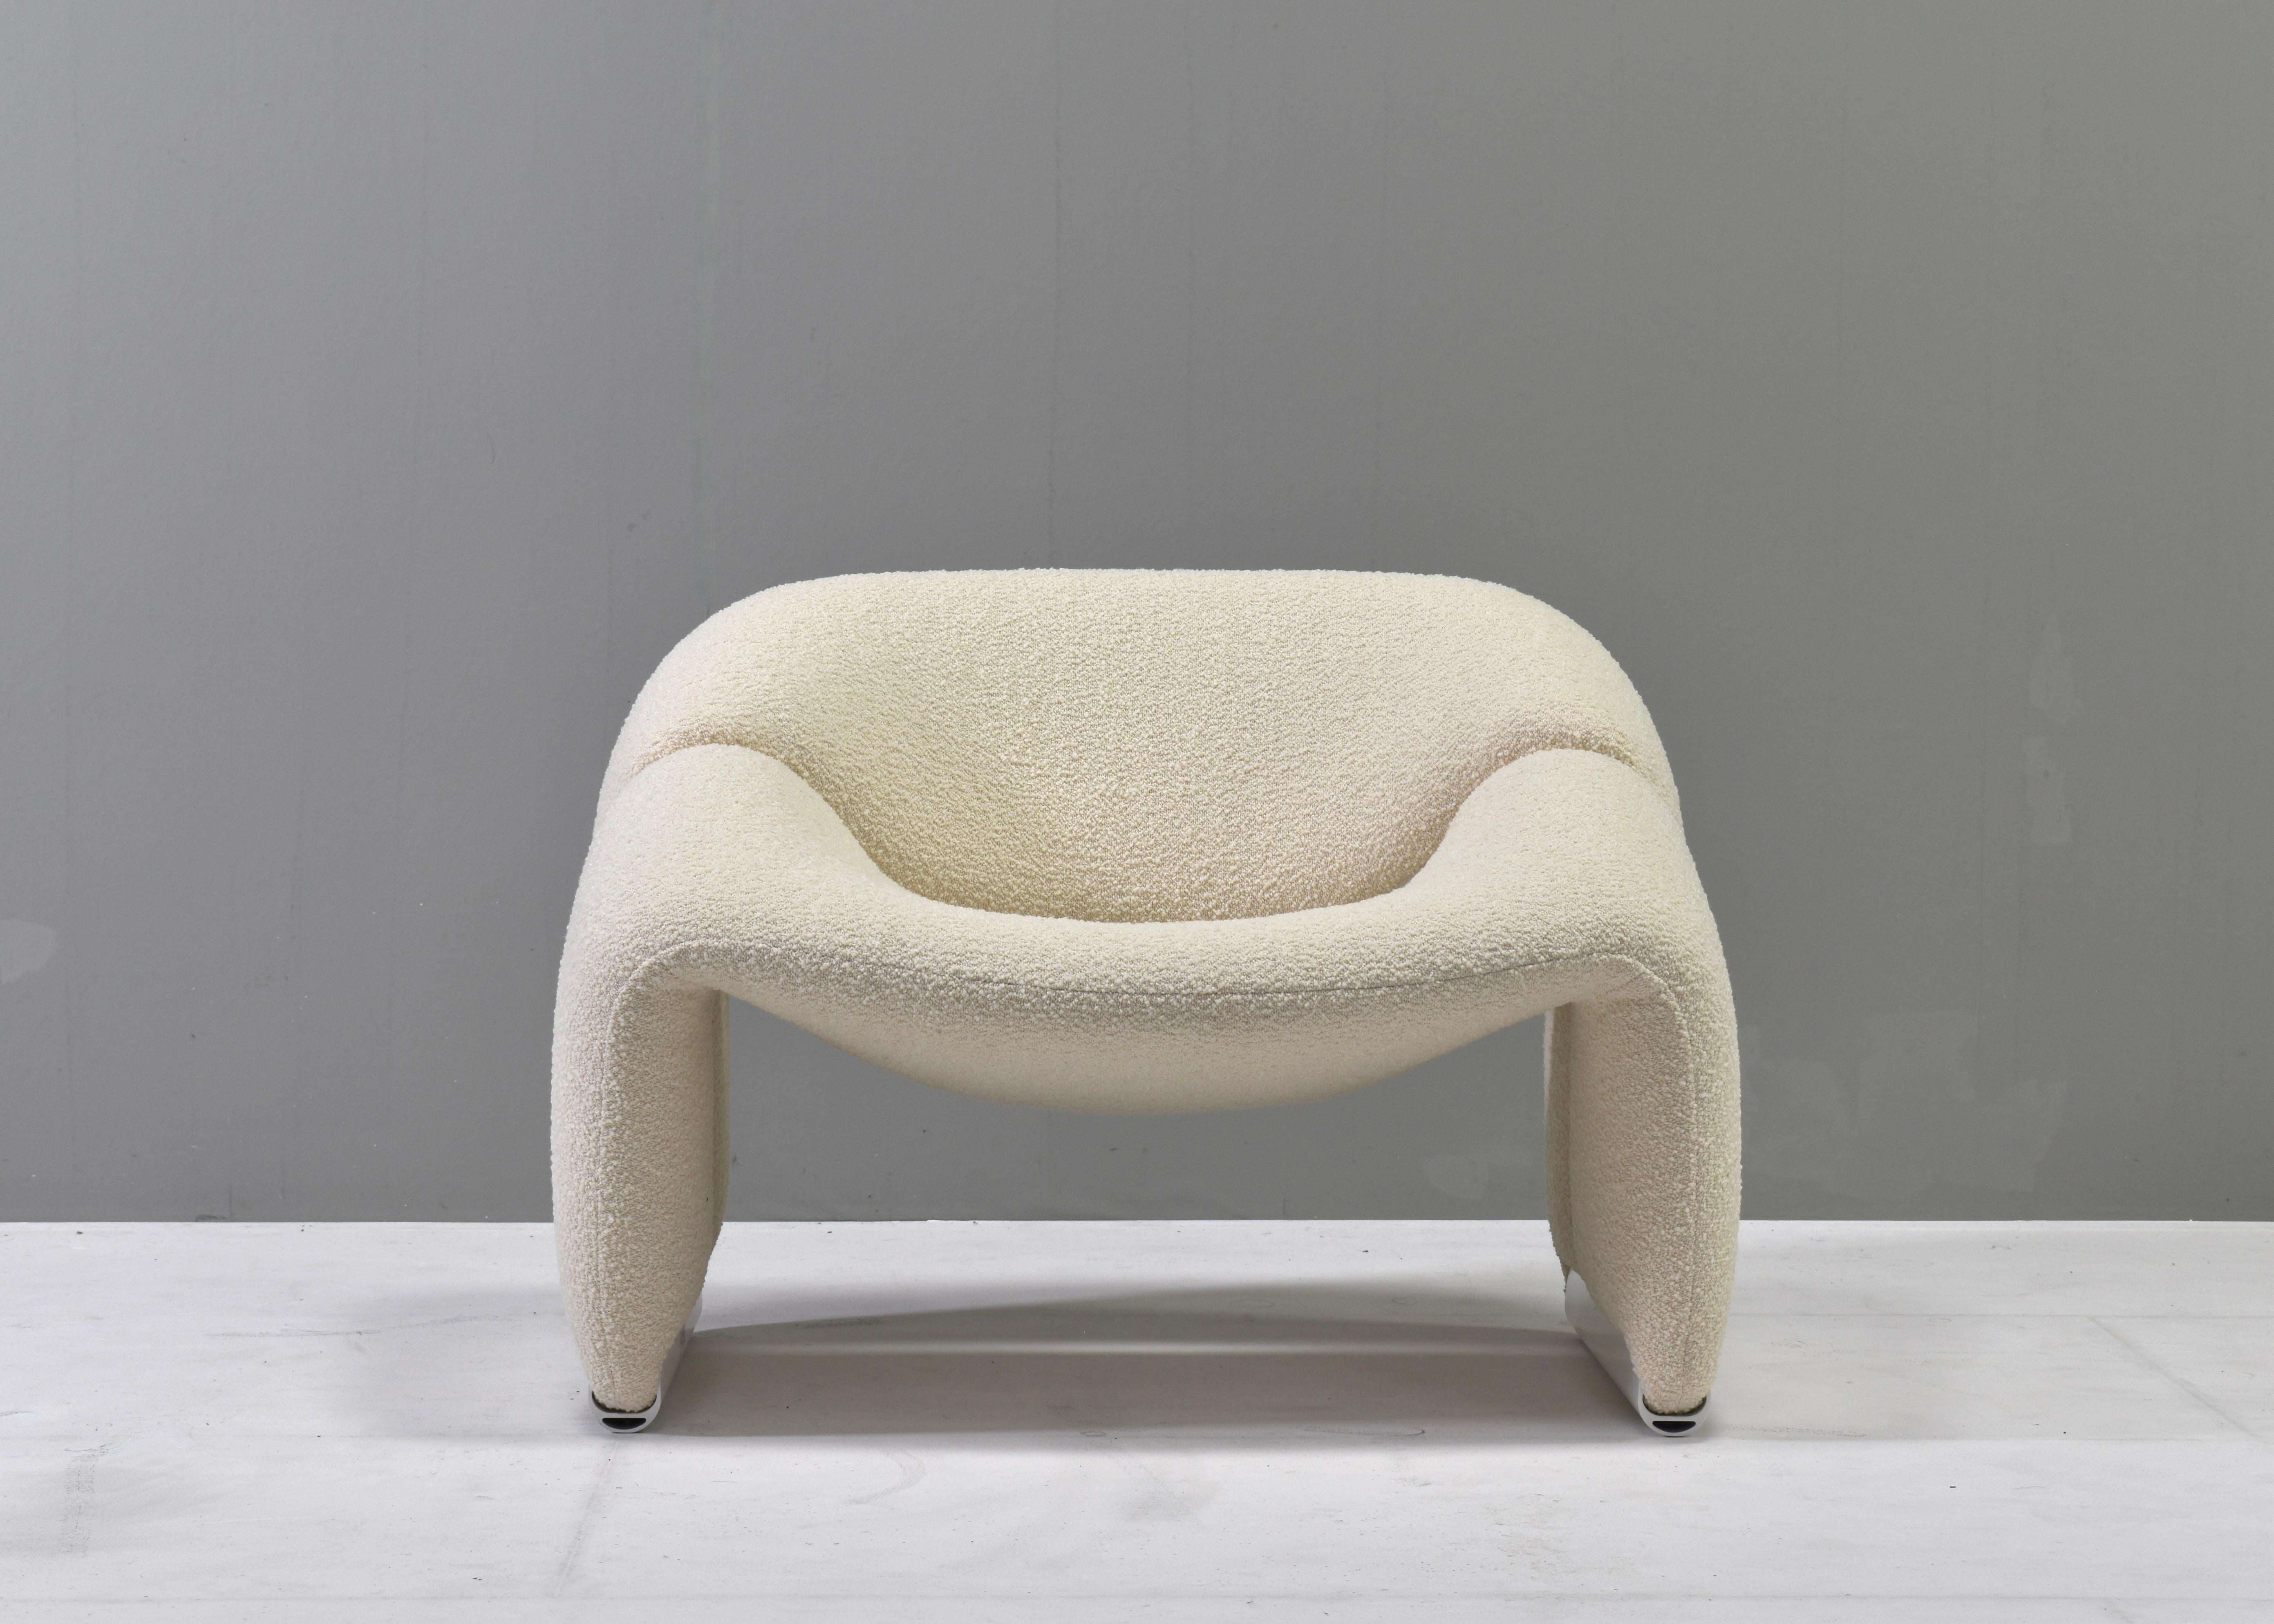 Fauteuil de salon 'Groovy' F598 par Pierre Paulin pour ARTIFORT - Pays-Bas, 1972. L'assise est très confortable et ergonomique.

La chaise a été entièrement restaurée avec une nouvelle mousse et un nouveau rembourrage dans un magnifique tissu de